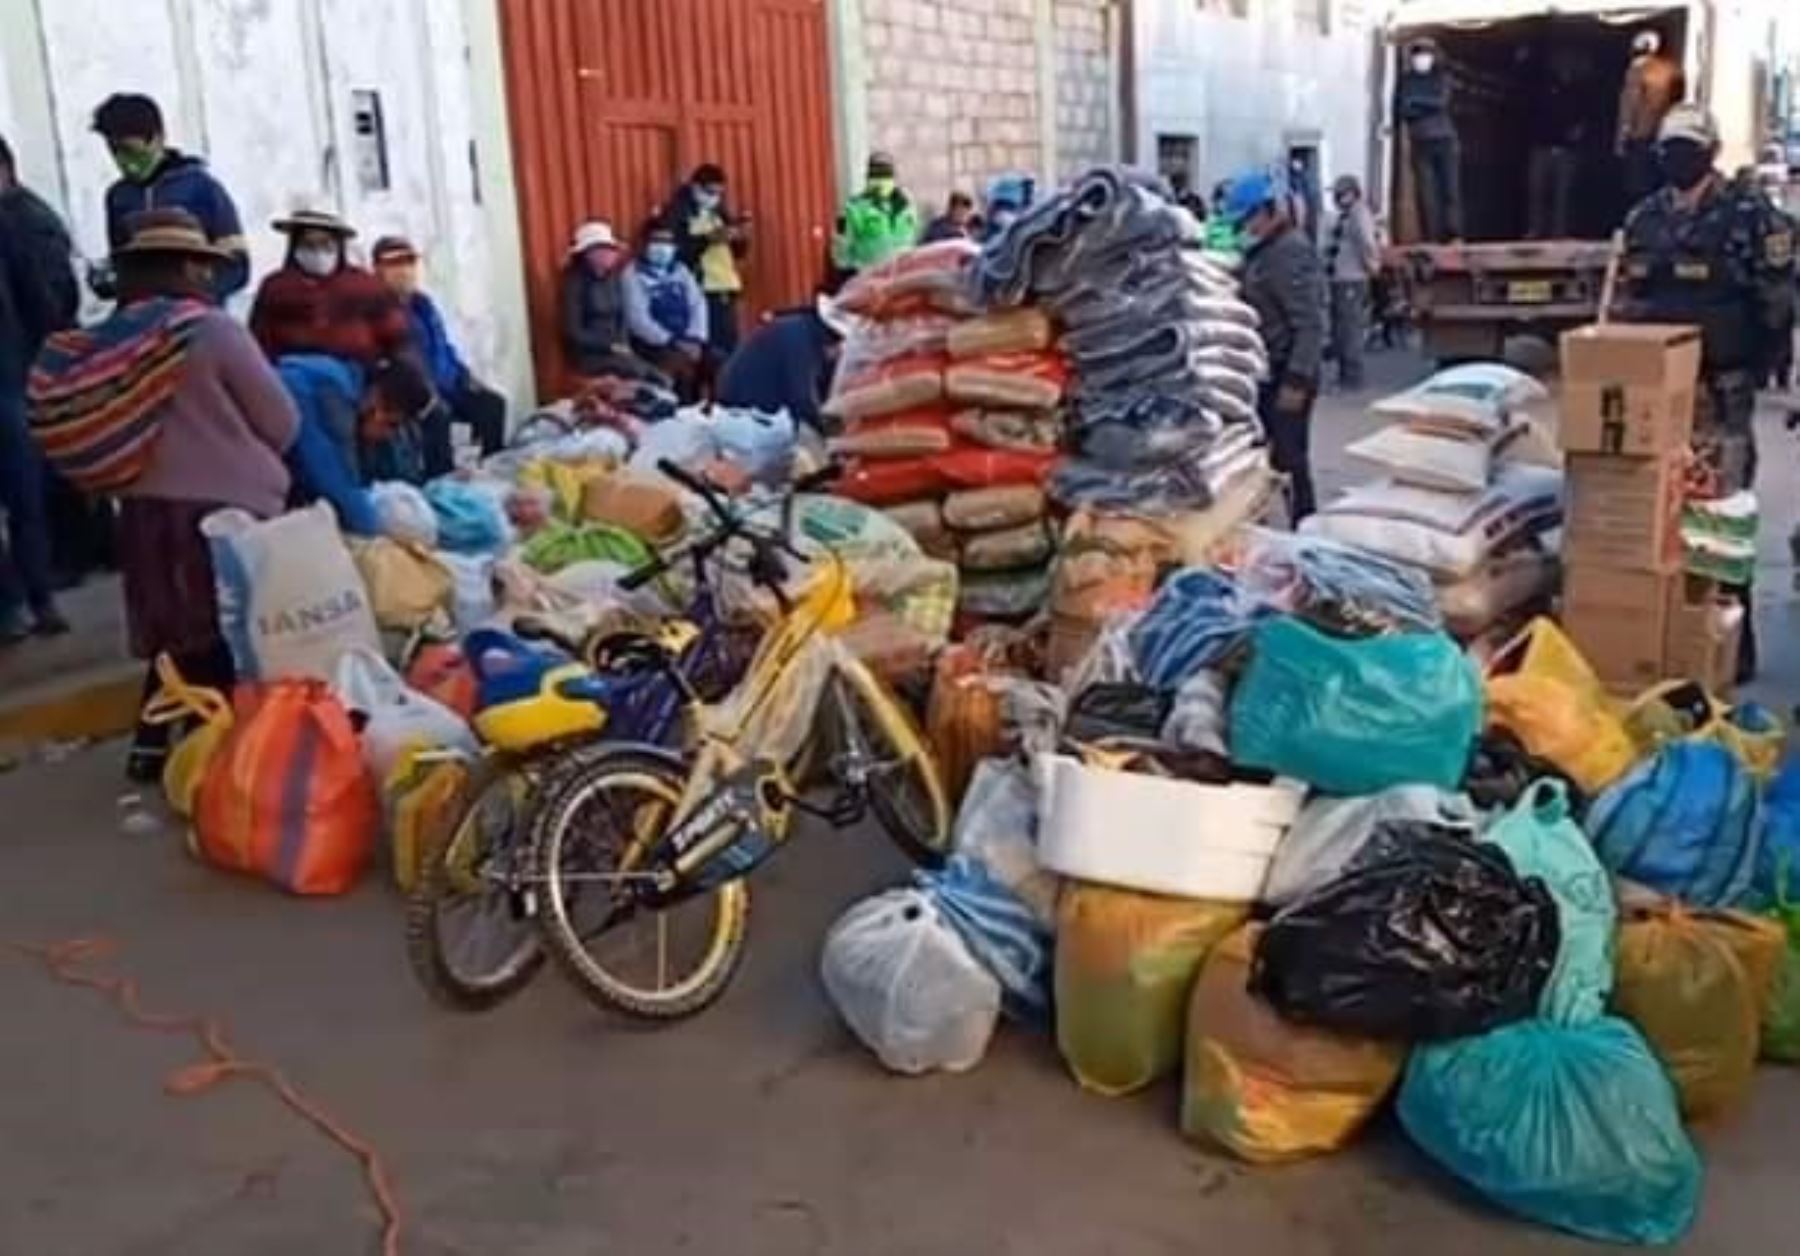 Pobladores de la provincia de Azángaro, en Puno, se unieron para ayudar a cinco niños huérfanos que perdieron a sus padres y organizaron una colecta. ANDINA/Difusión